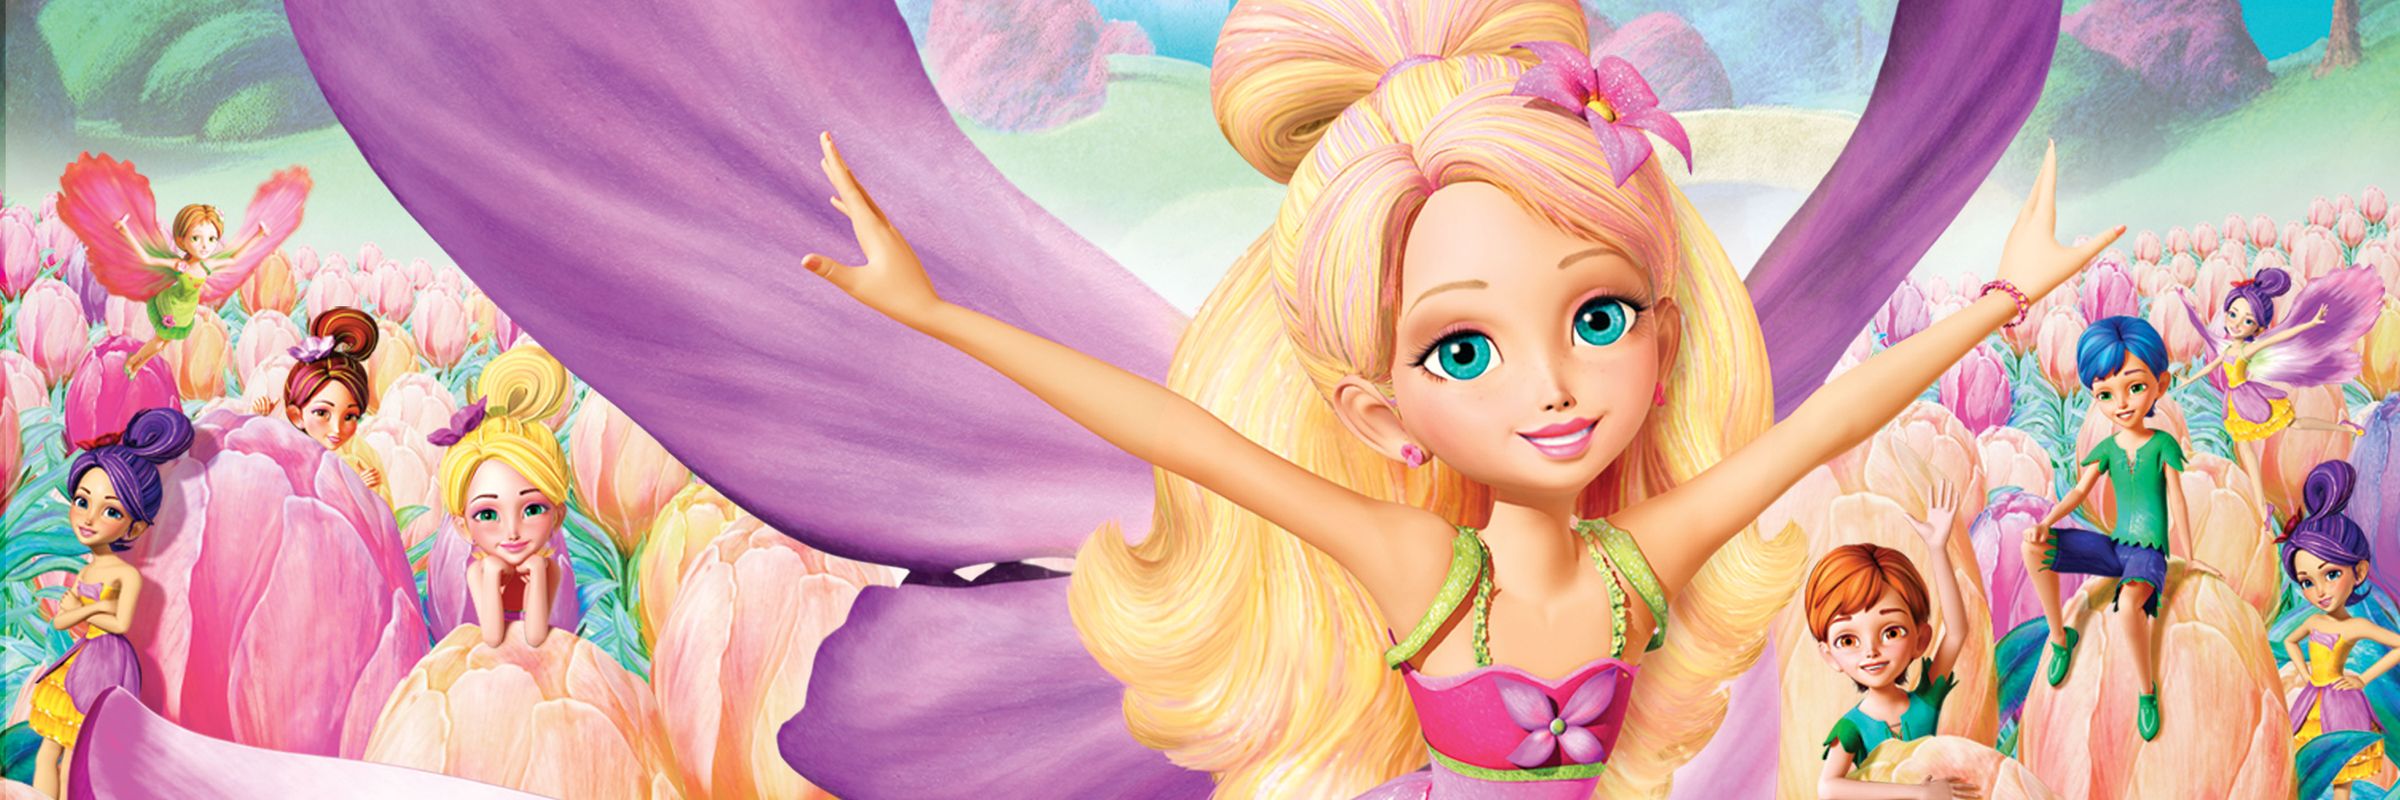 Download 46 Koleksi Gambar Film Barbie Thumbelina  HD